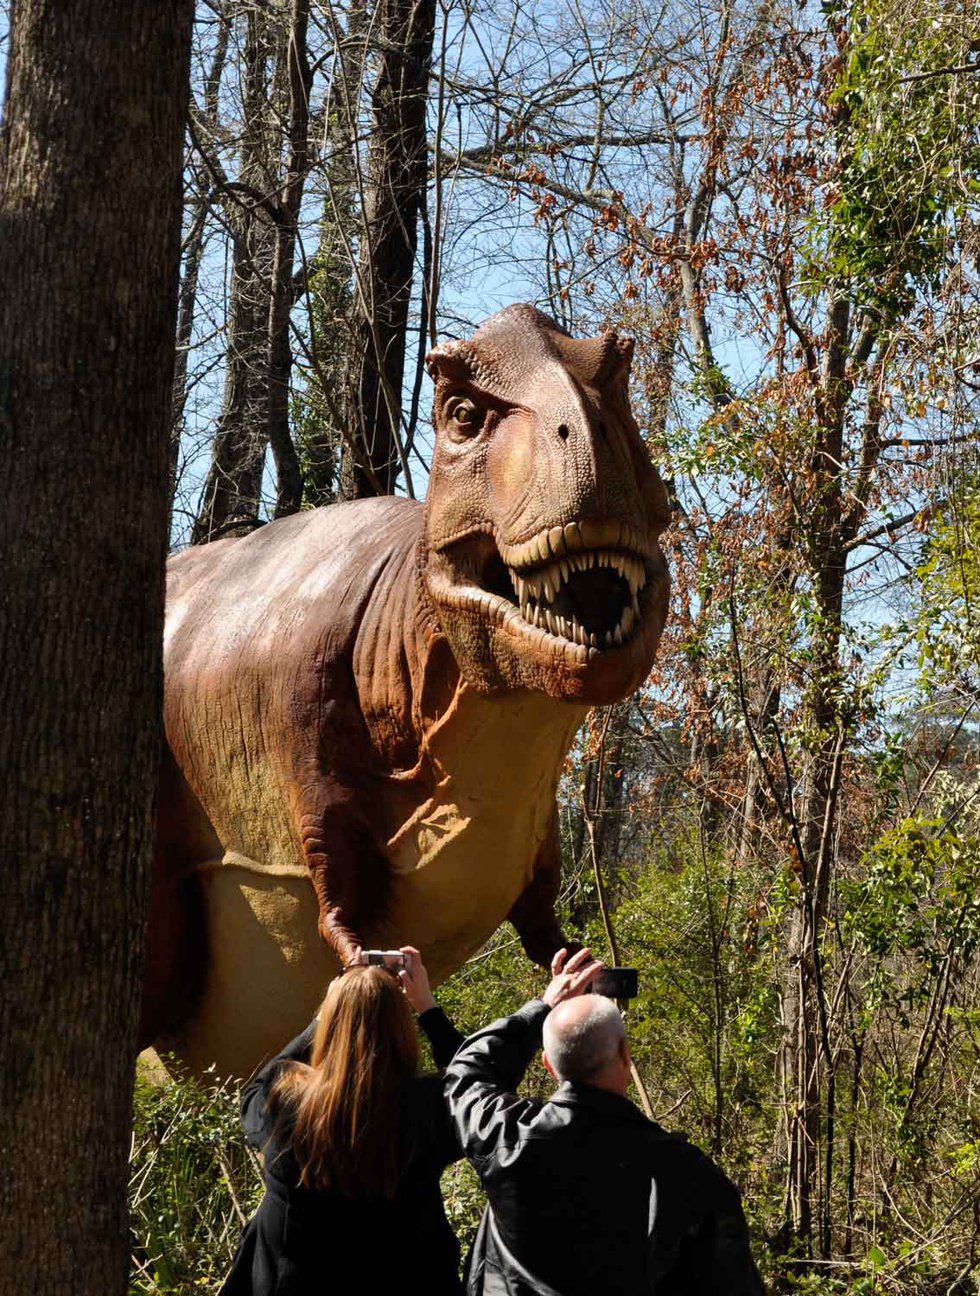 Birmingham Zoo opens dinosaur exhibit